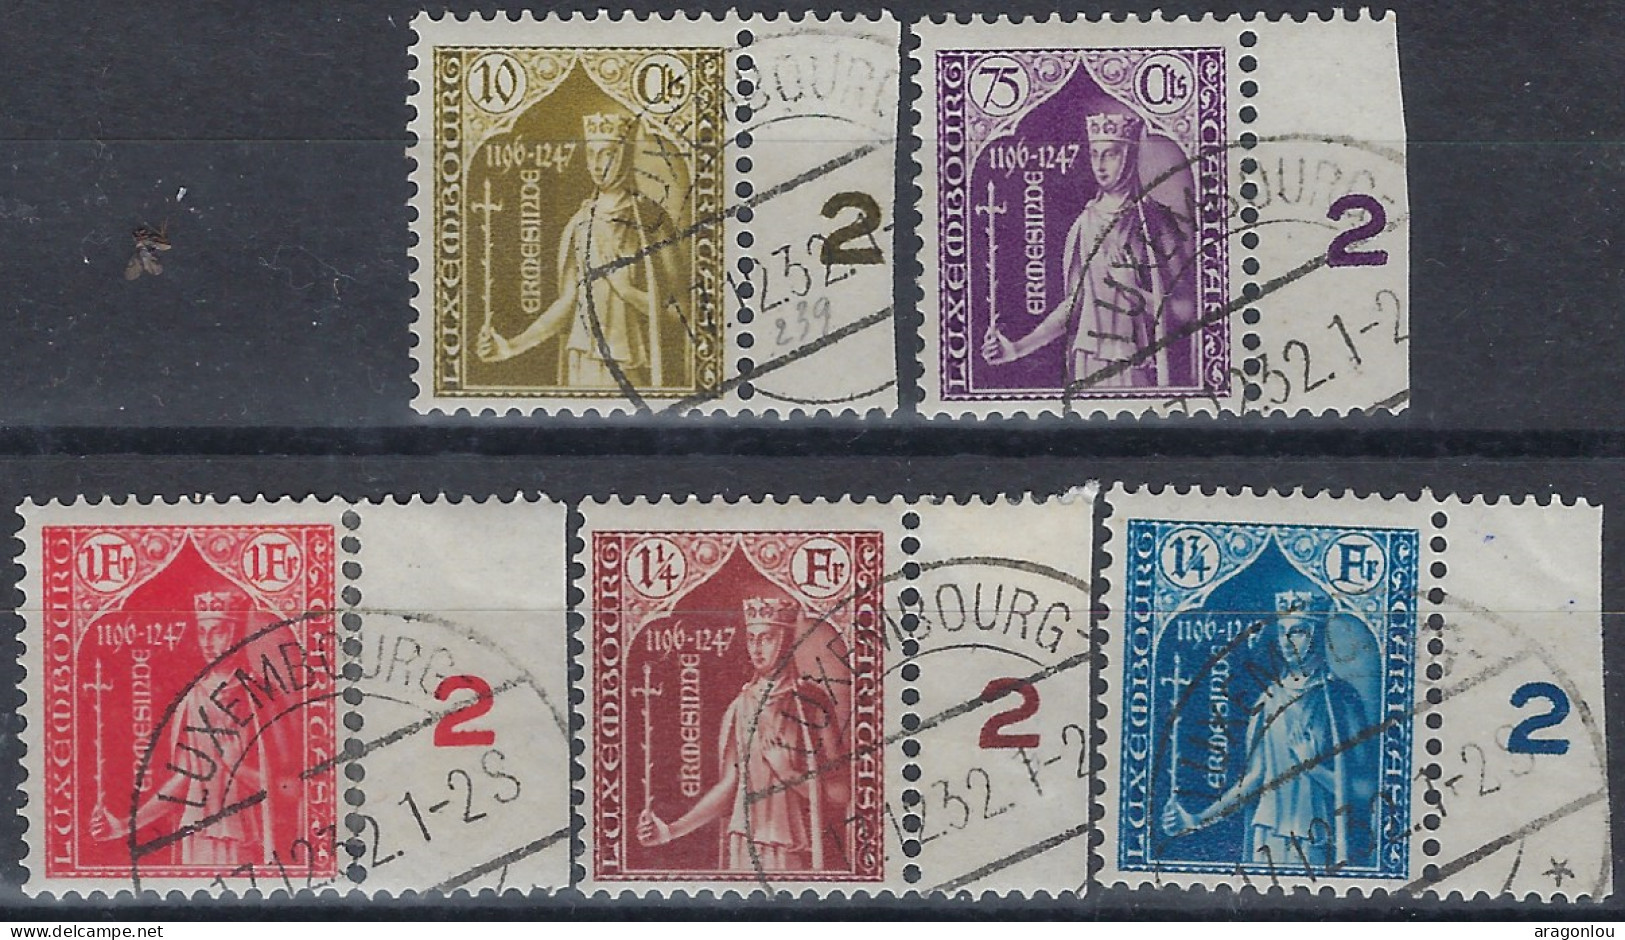 Luxembourg - Luxemburg - Timbres  1932  Série    Comtesse   Ermesinde    Caritas °   VC.140,- - Oblitérés